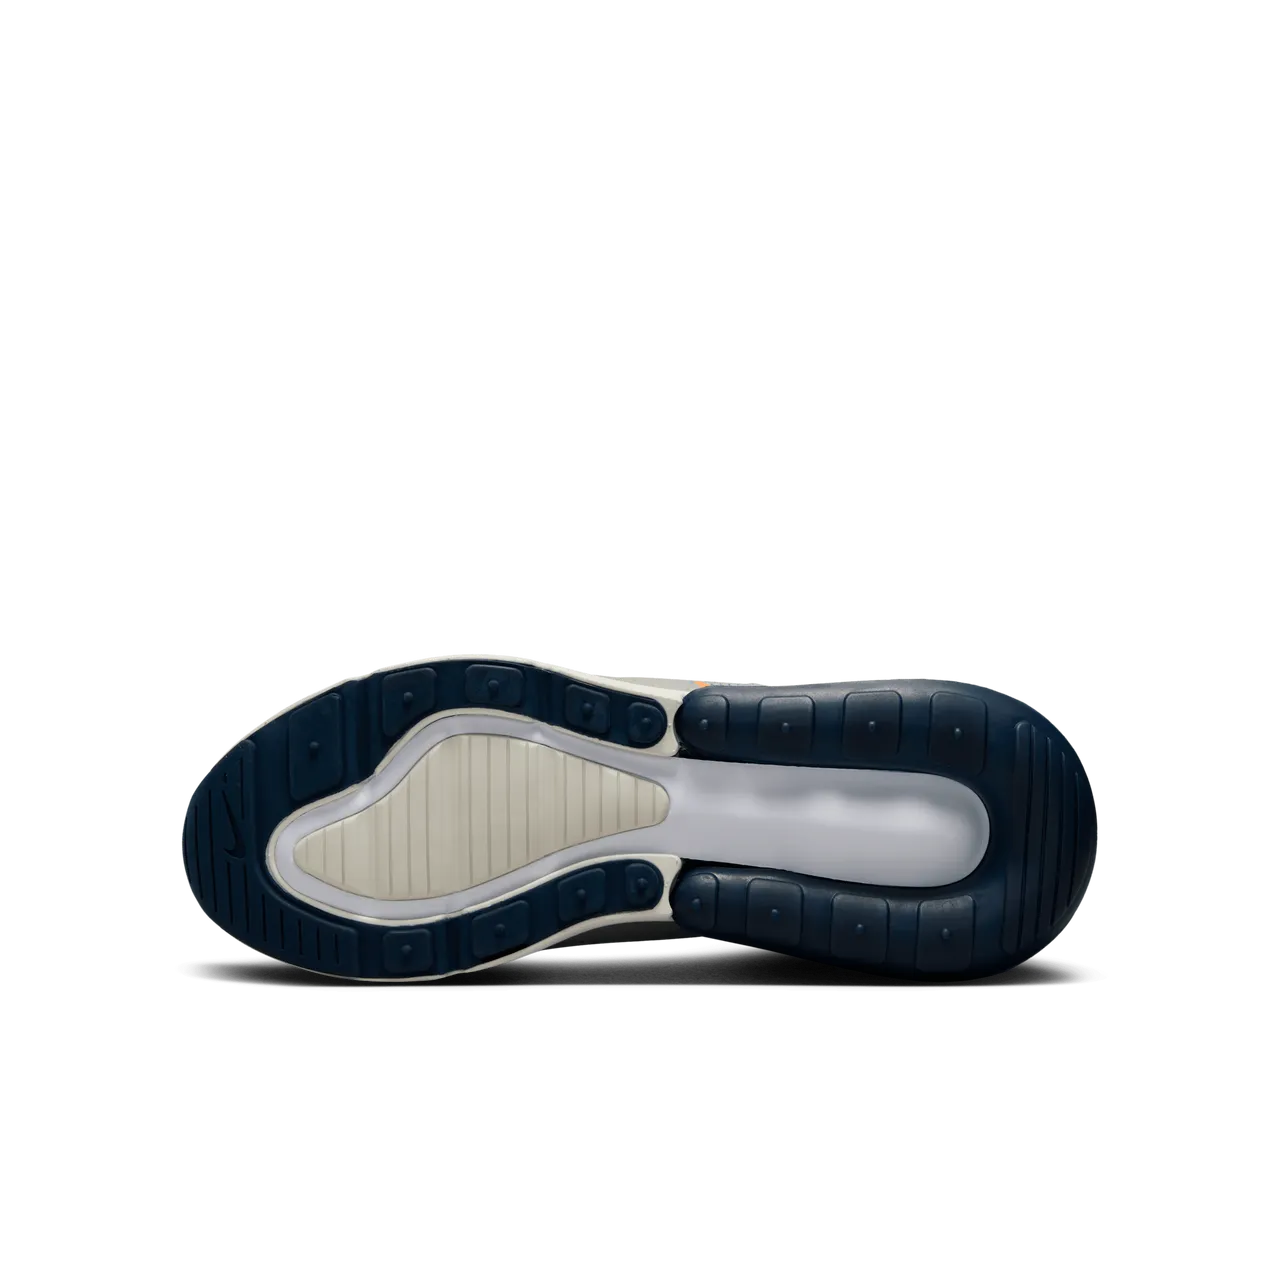 Nike Air Max 270 Schuh für ältere Kinder - Grau